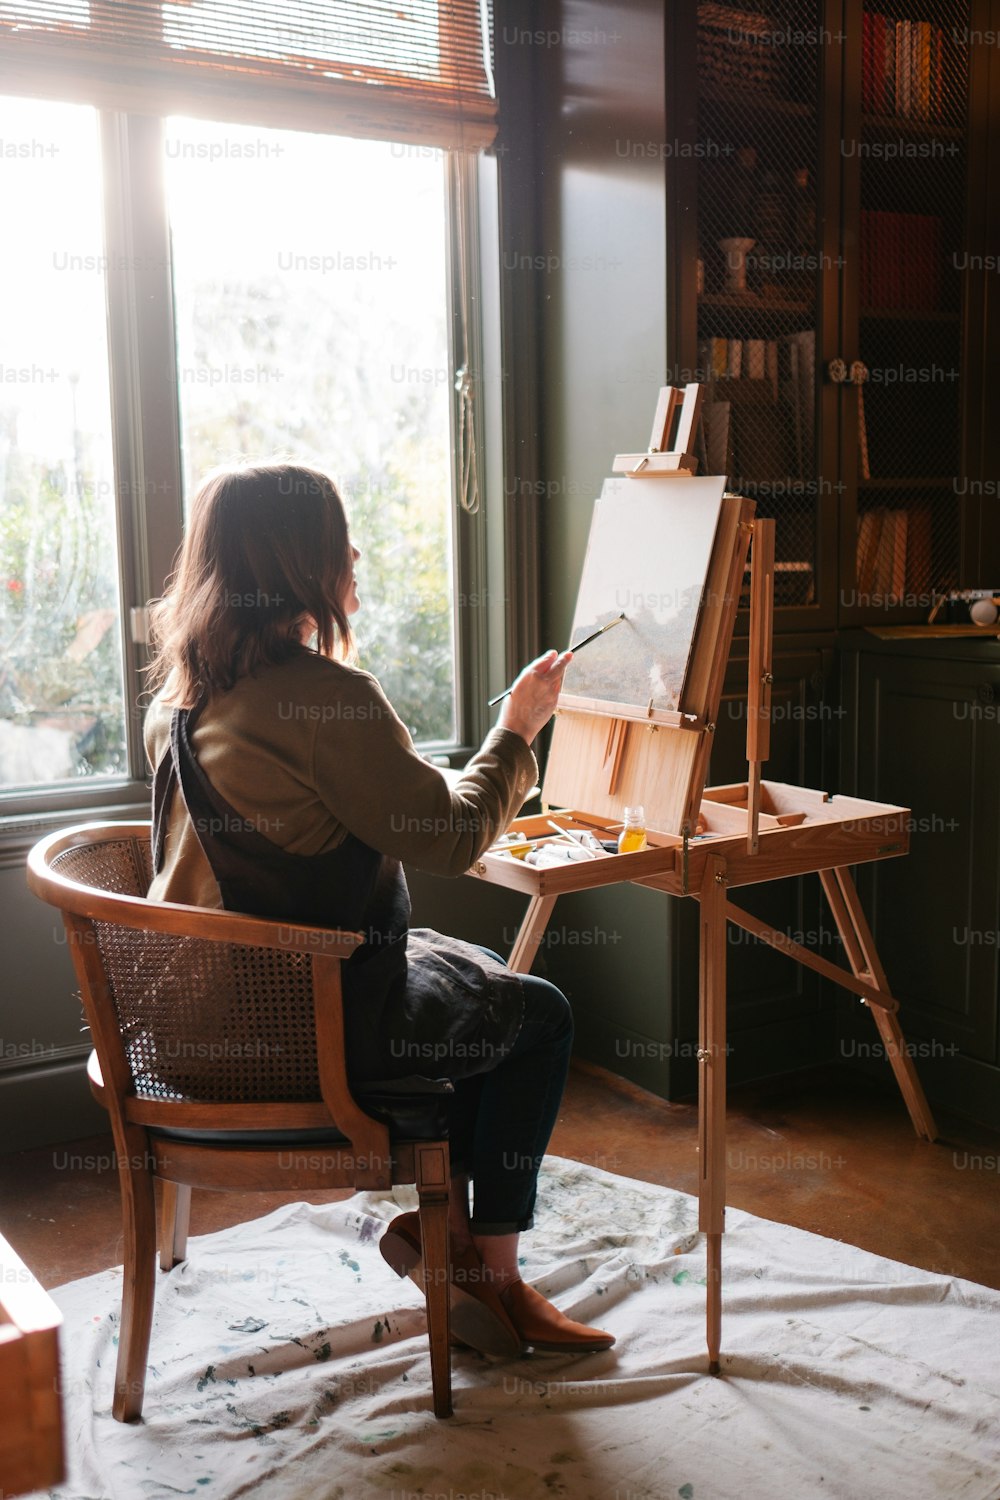 Una mujer sentada en una silla frente a un cuadro